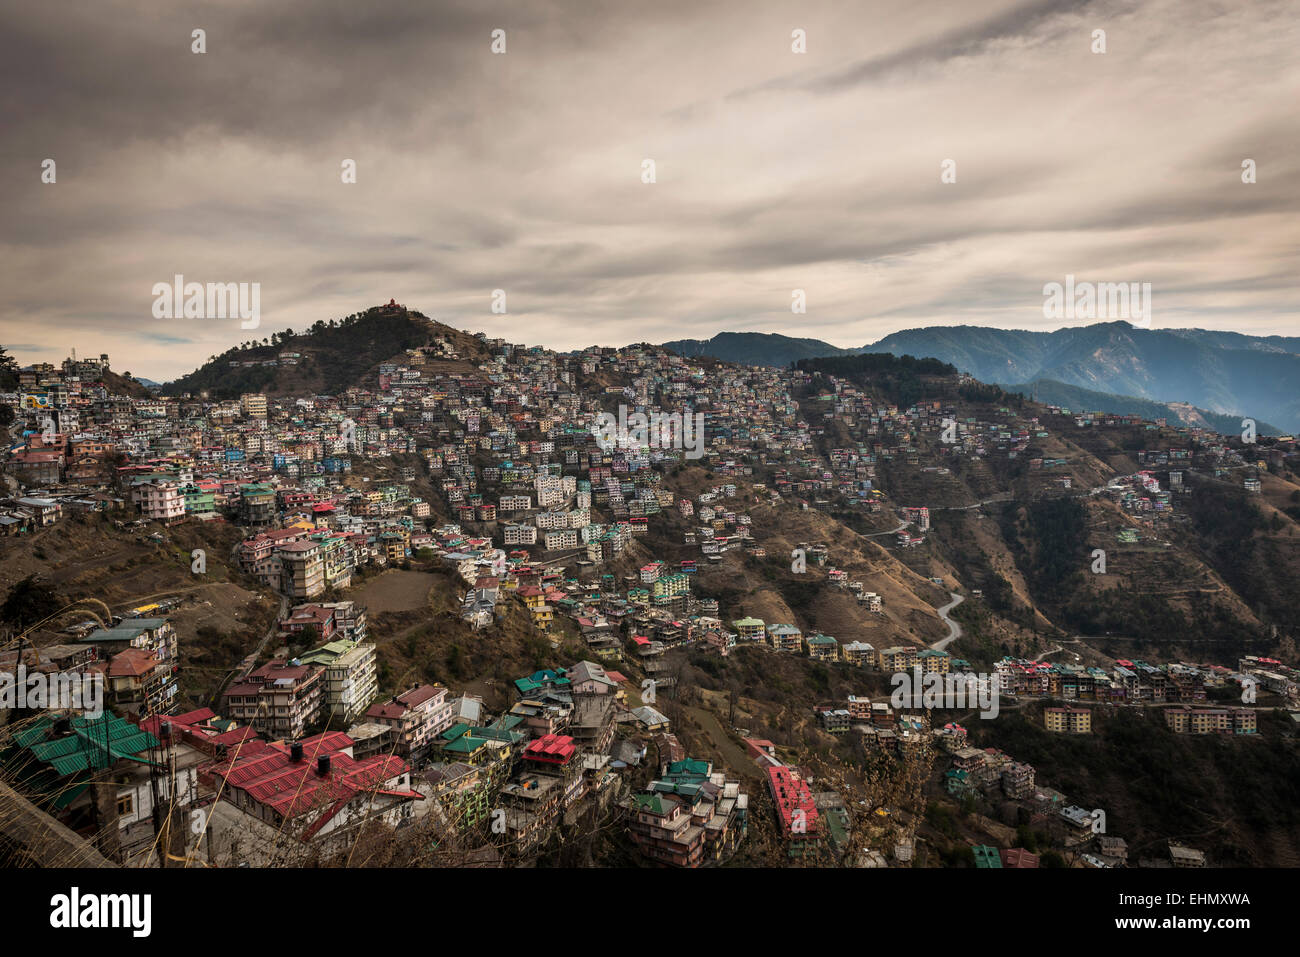 La expansión urbana en las estribaciones del Himalaya, en el distrito de Shimla, Himachal Pradesh, India Foto de stock